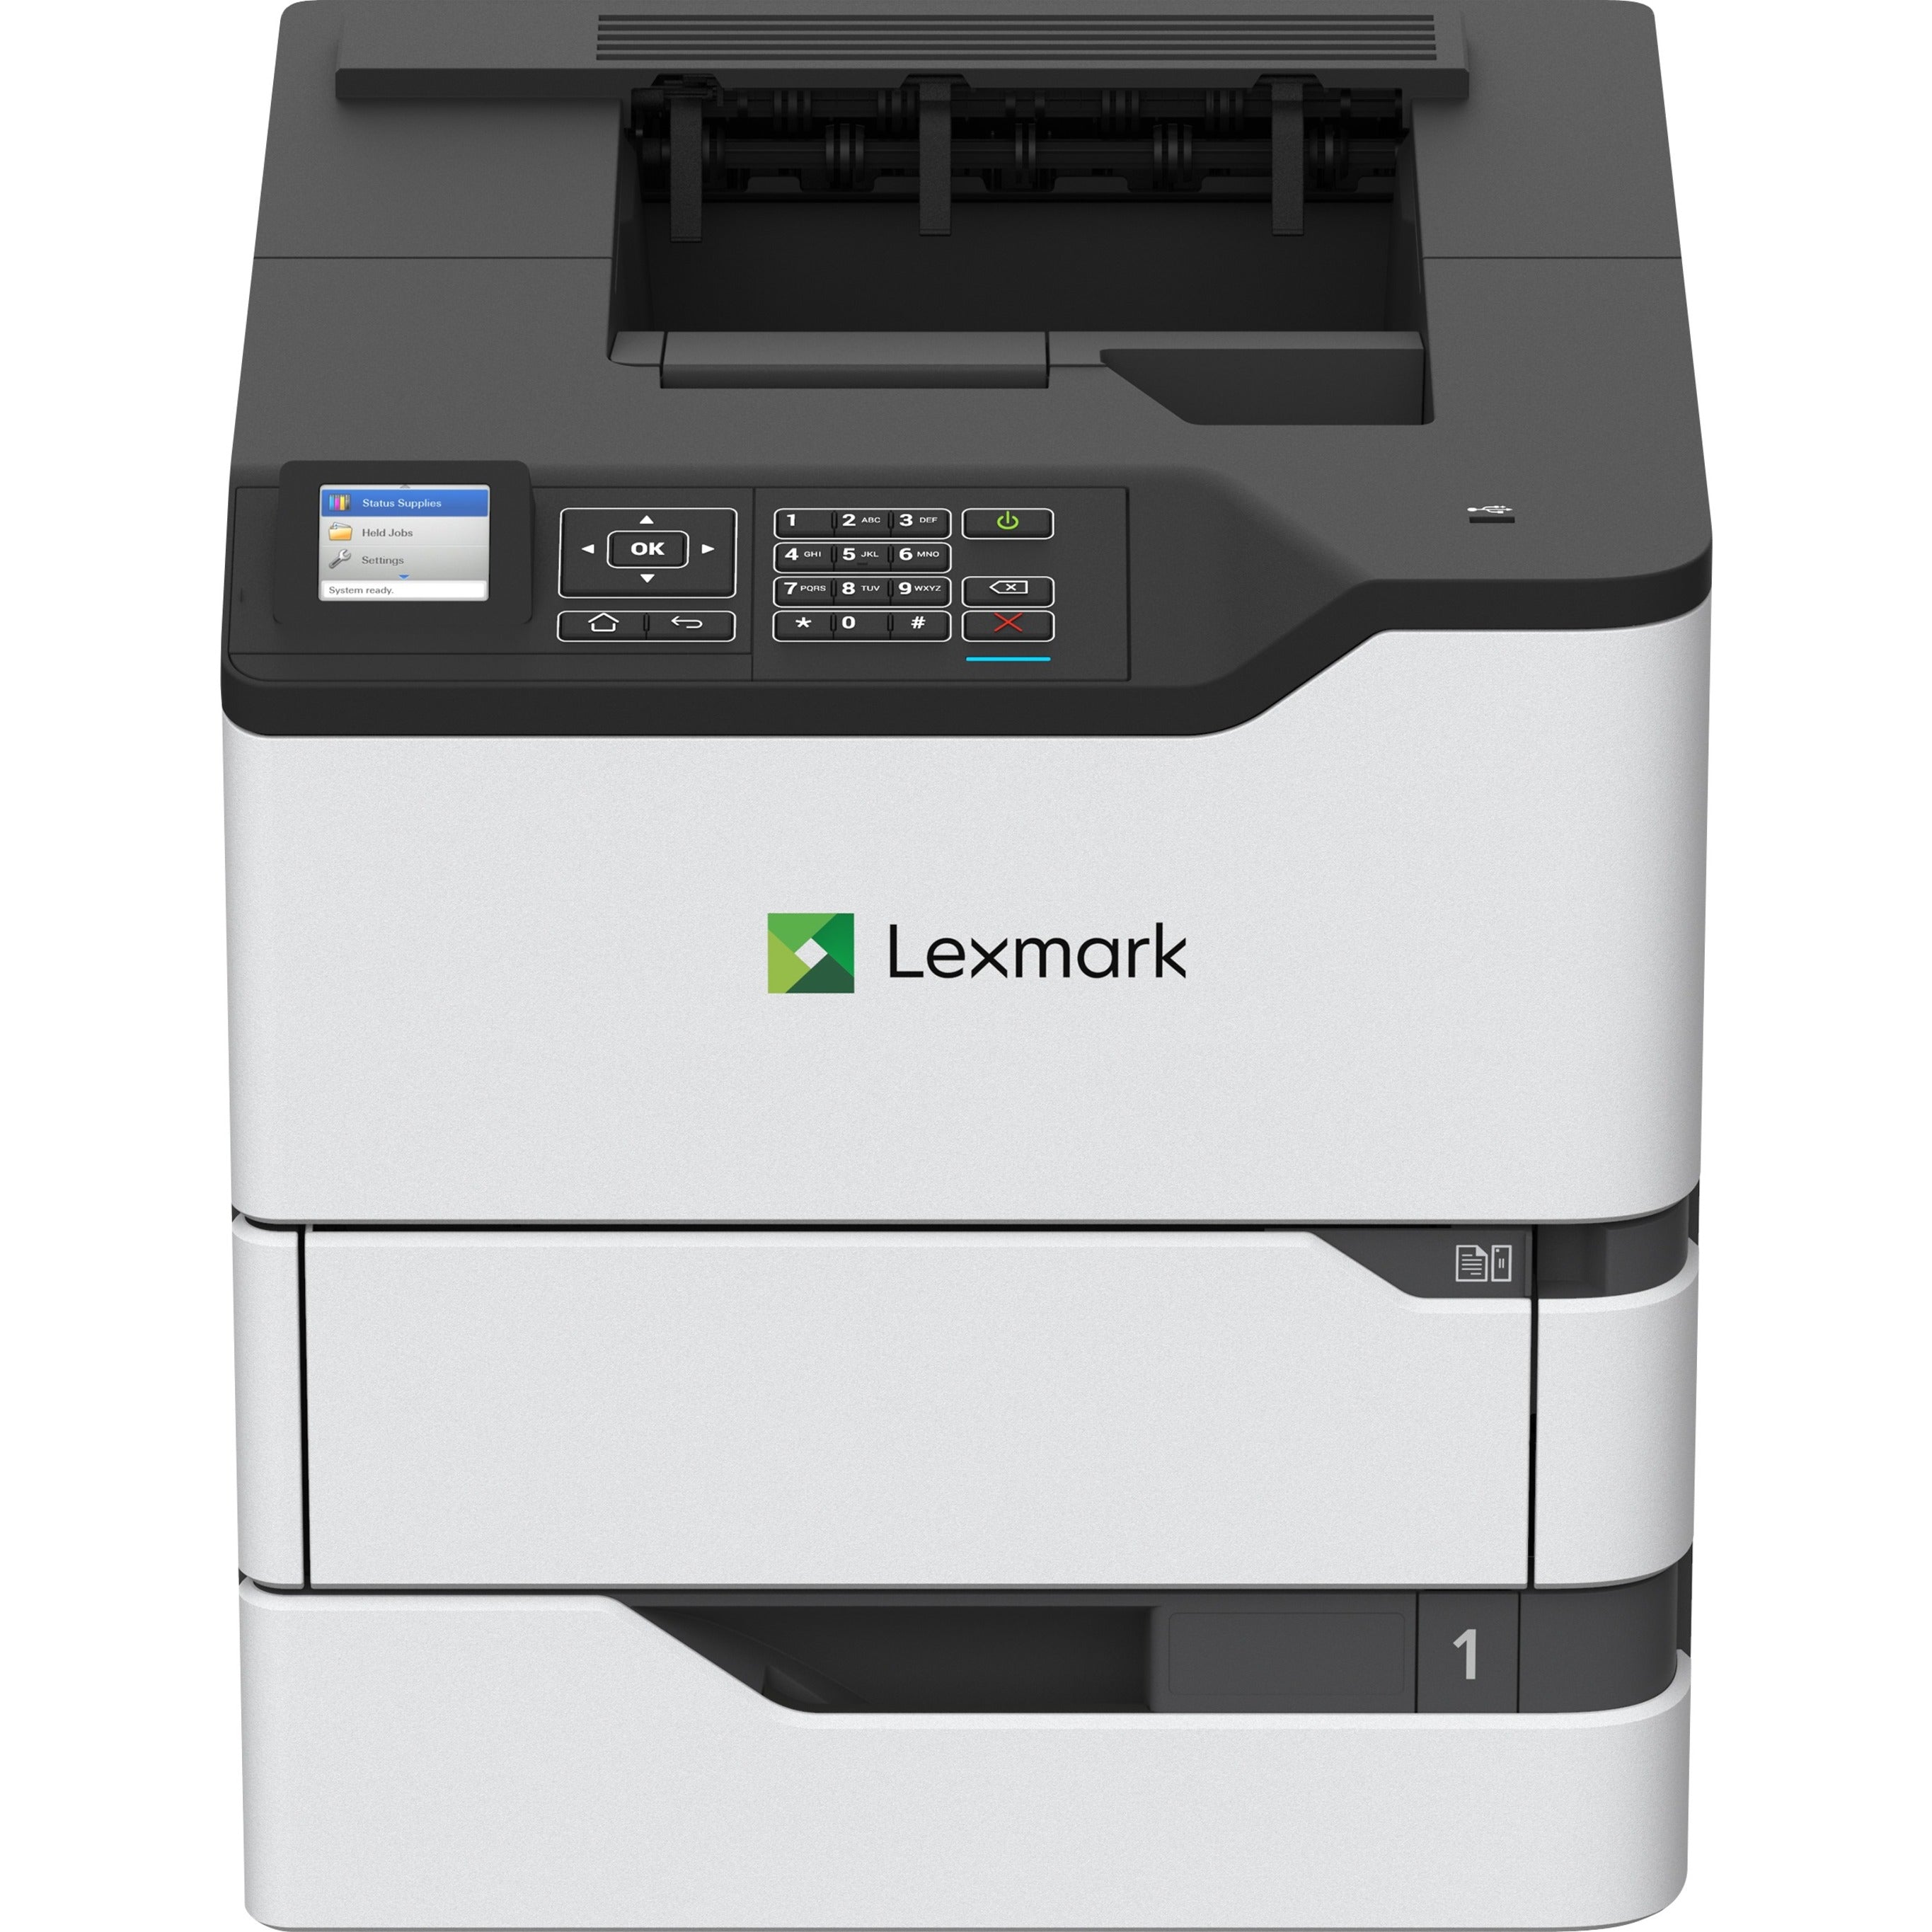 雷士 50G0610 MS725dvn 激光打印机，单色，自动双面打印，55 页/分，1200 x 1200 dpi 雷士 是品牌名称。品牌名称翻译为Lexmark。